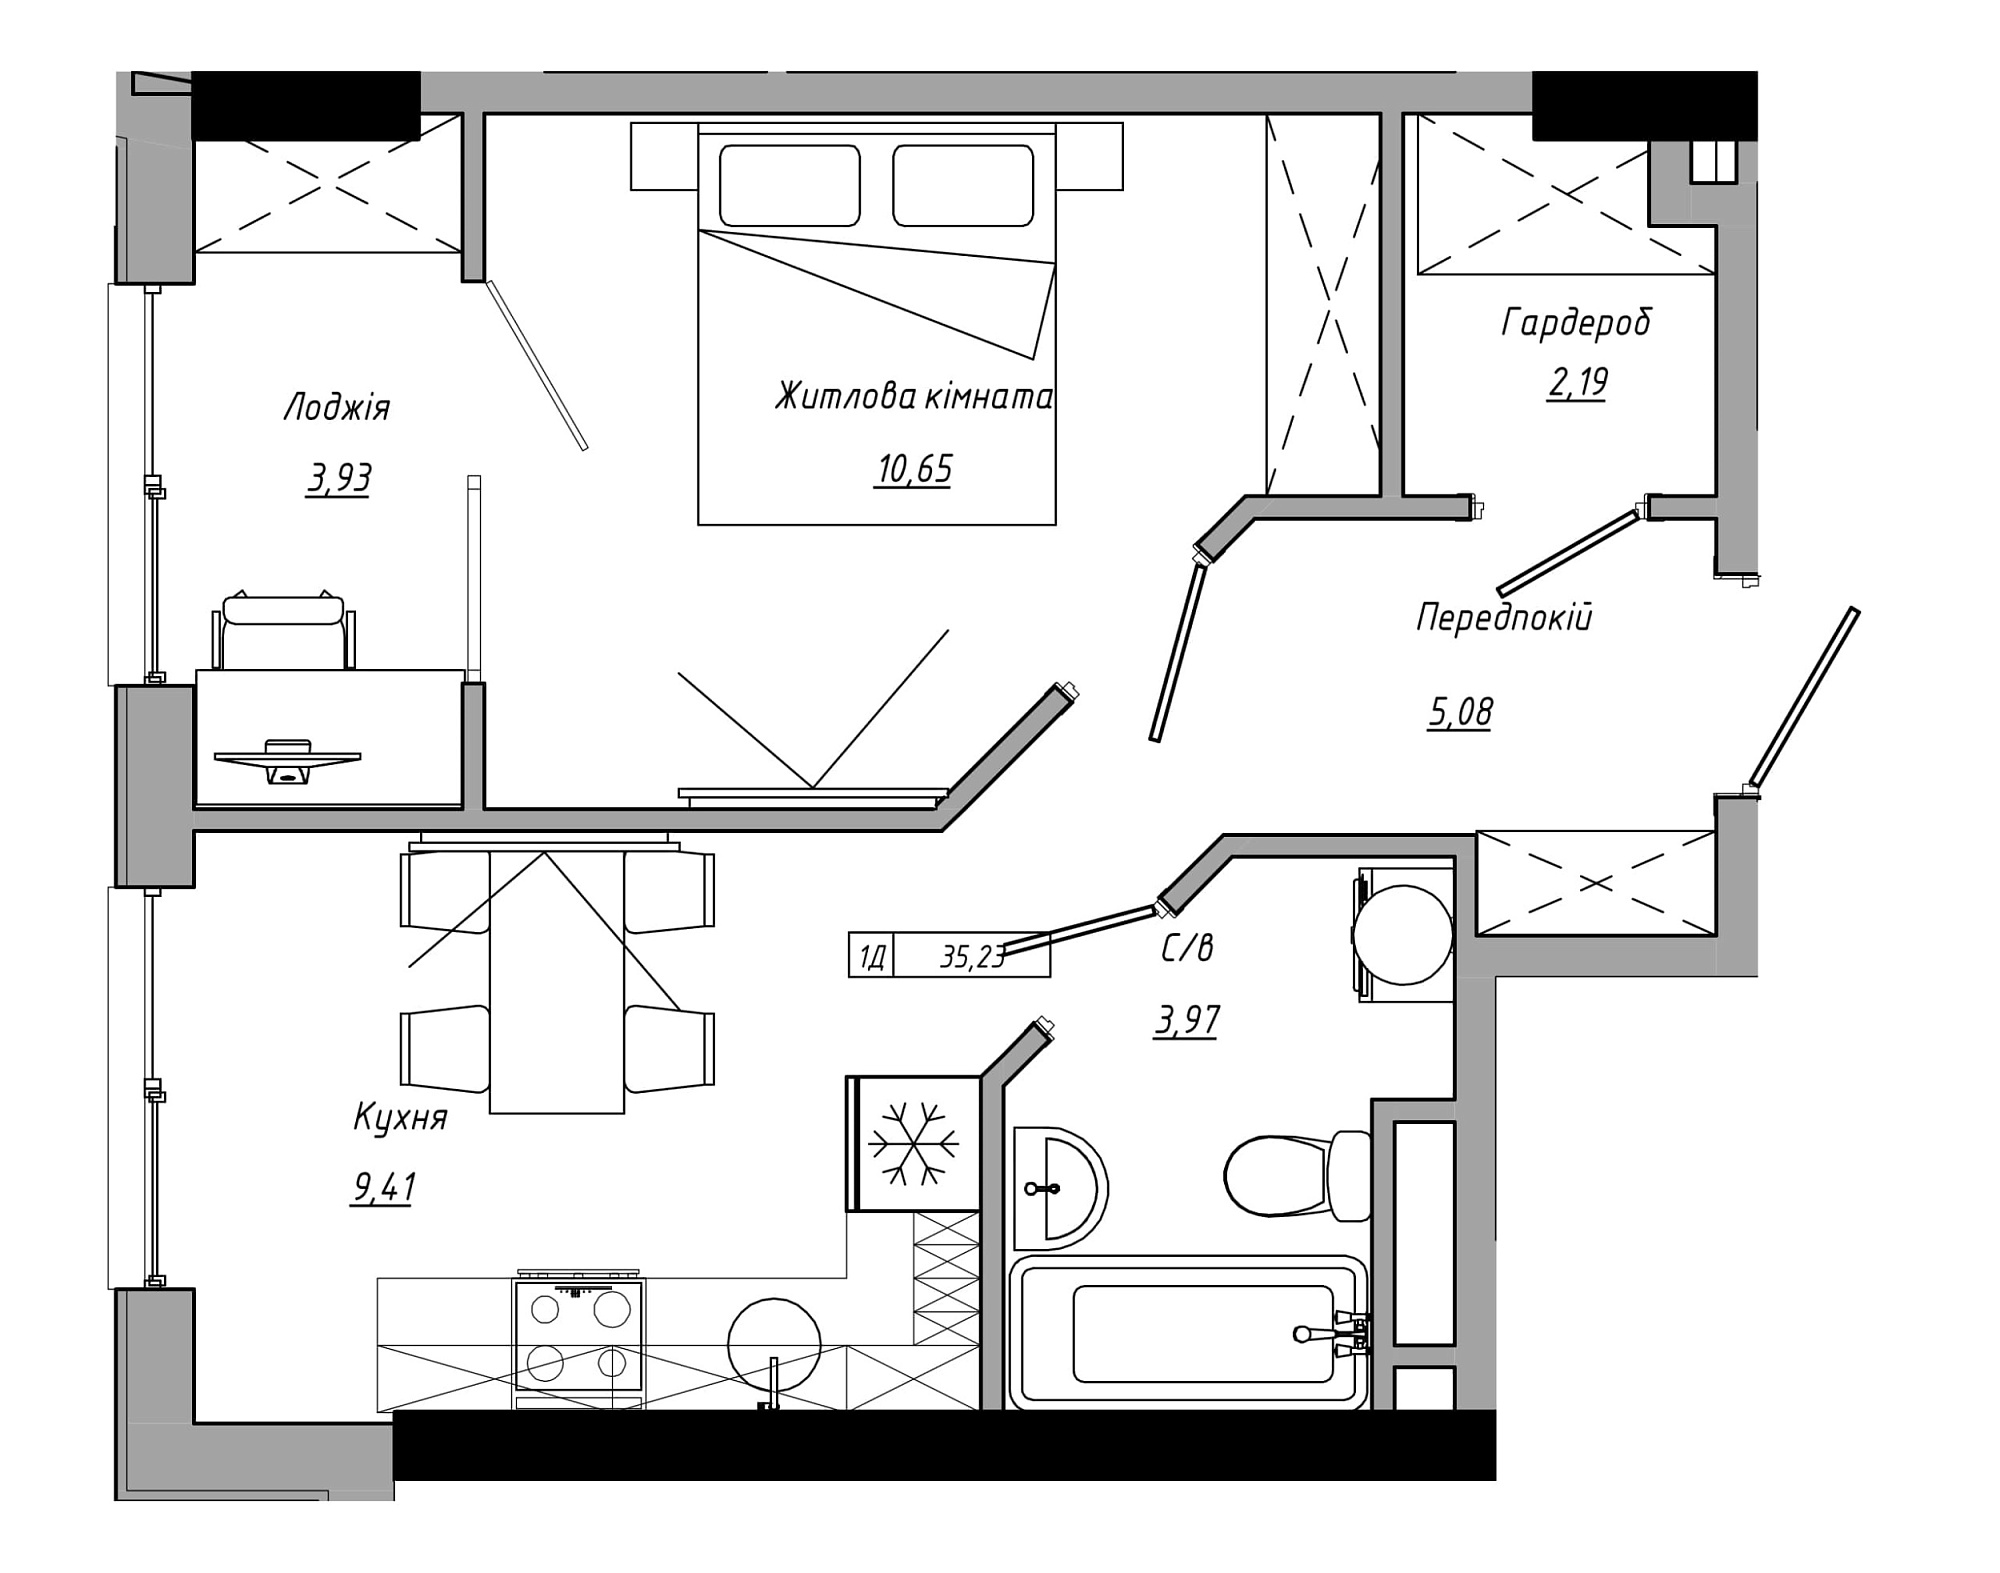 Планування 1-к квартира площею 35.23м2, AB-21-06/00006.